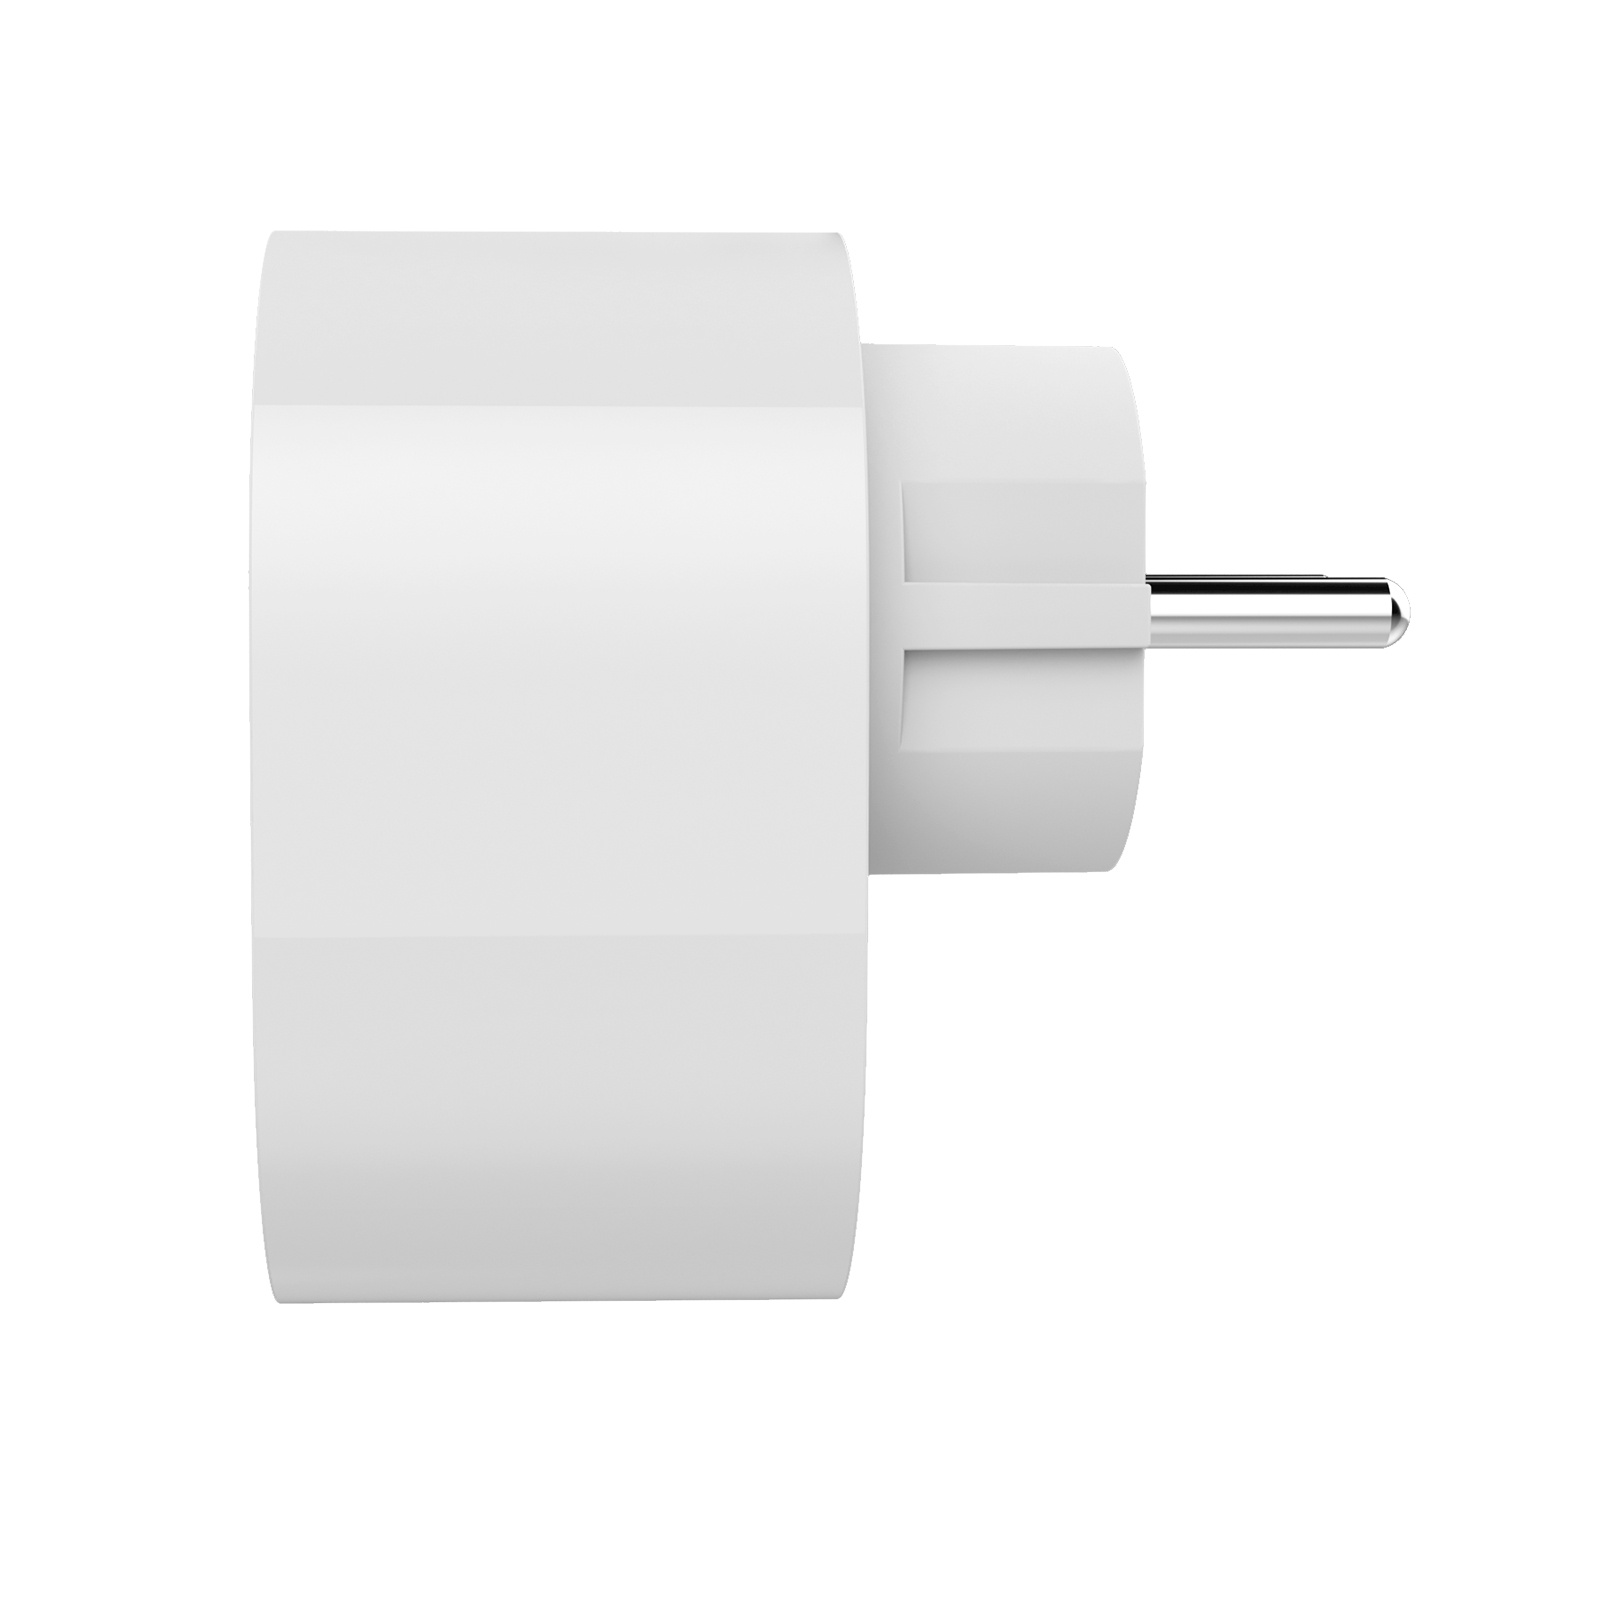 XIAOMI Mi Smart Plug 2 Commutateur sans fil Prise intelligente Compatible  Google Home à prix pas cher